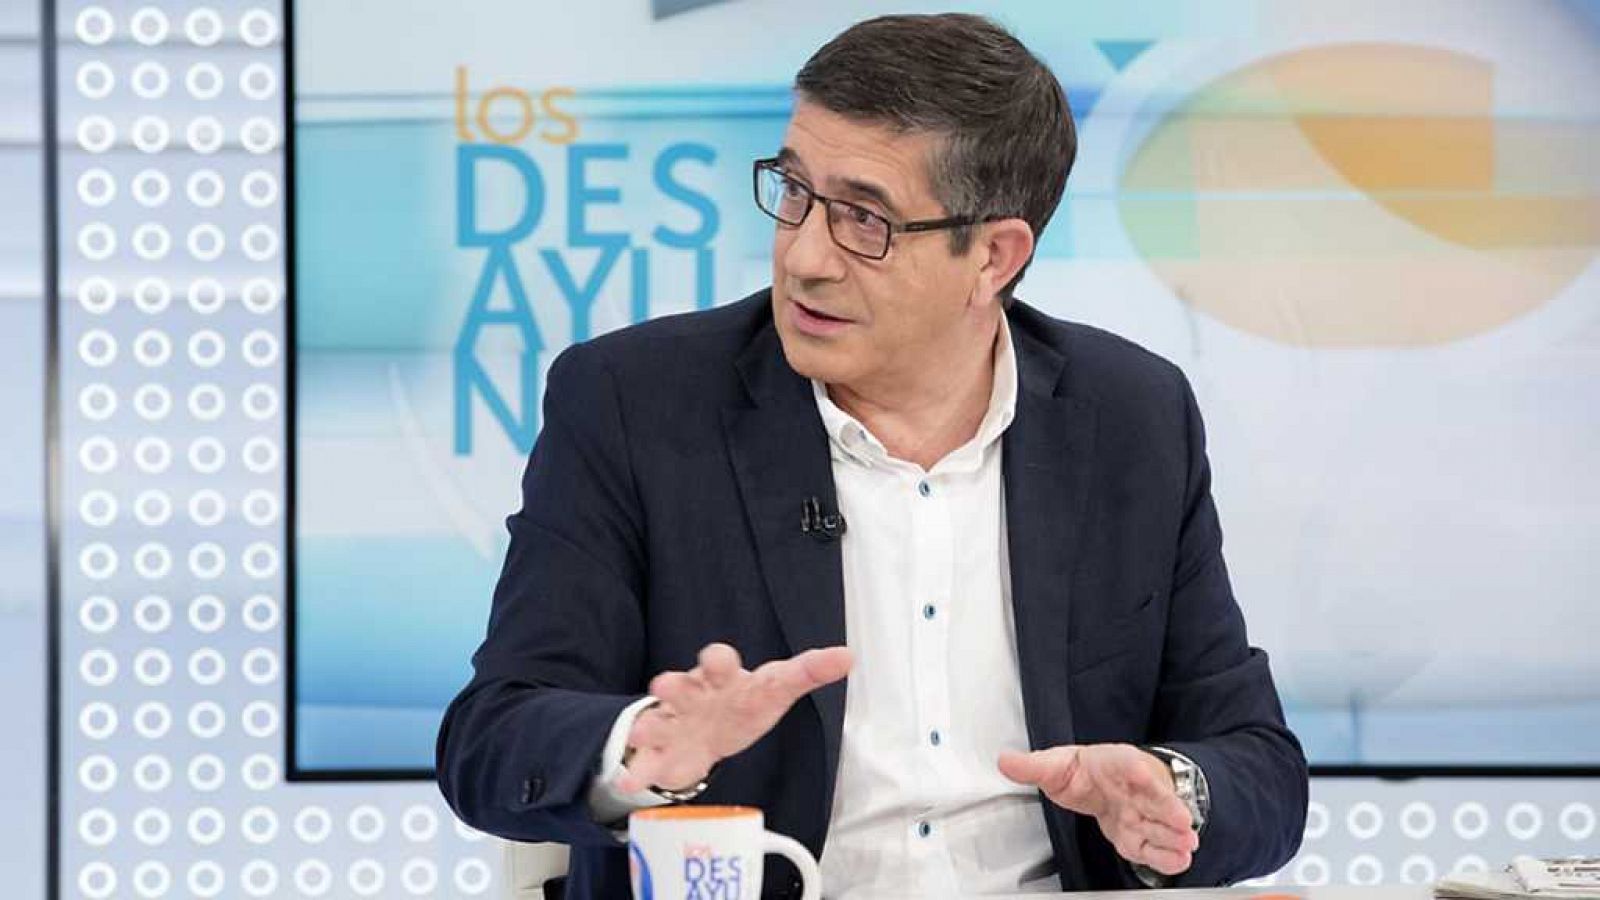 Los desayunos de TVE - Patxi López, Secretario de Política federal del PSOE